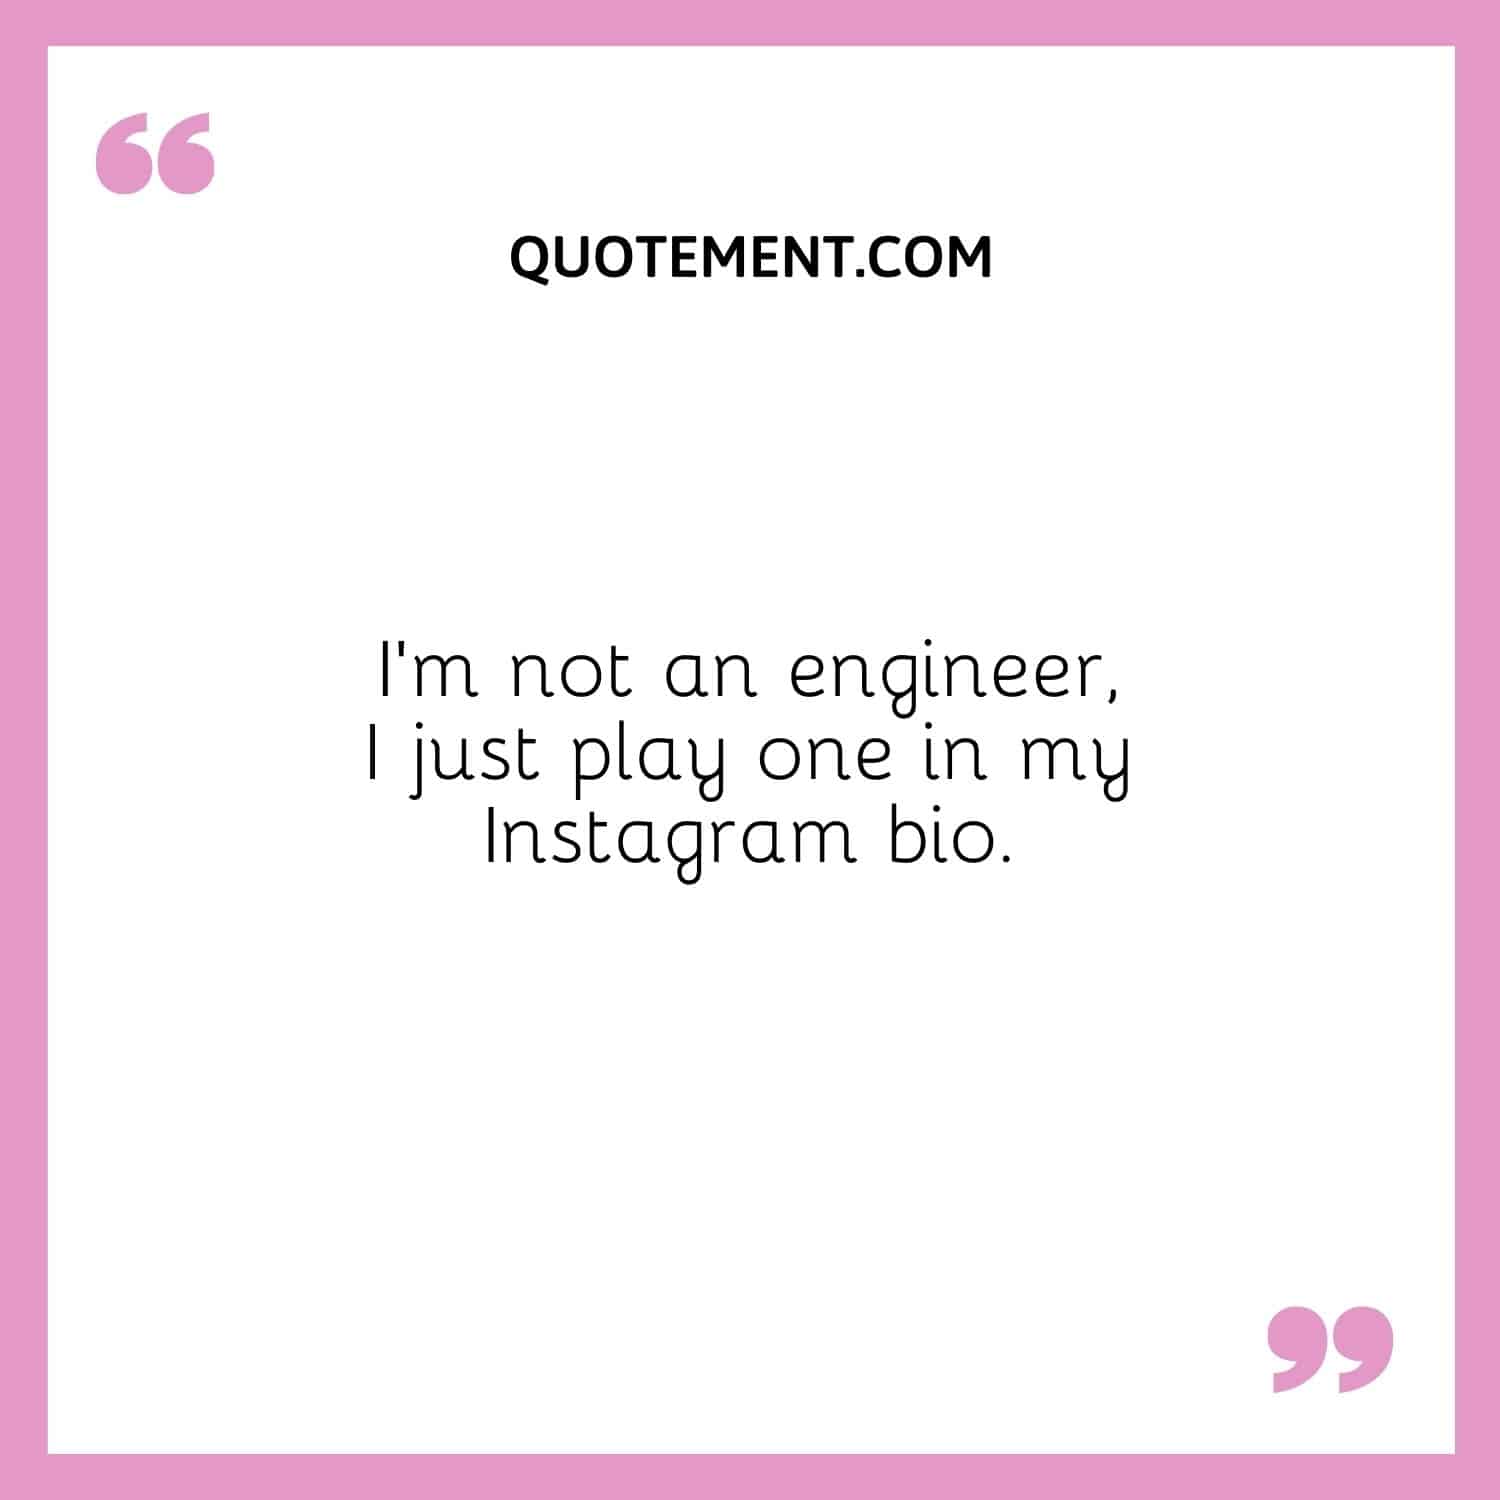 No soy ingeniero, solo hago de uno en mi biografía de Instagram.